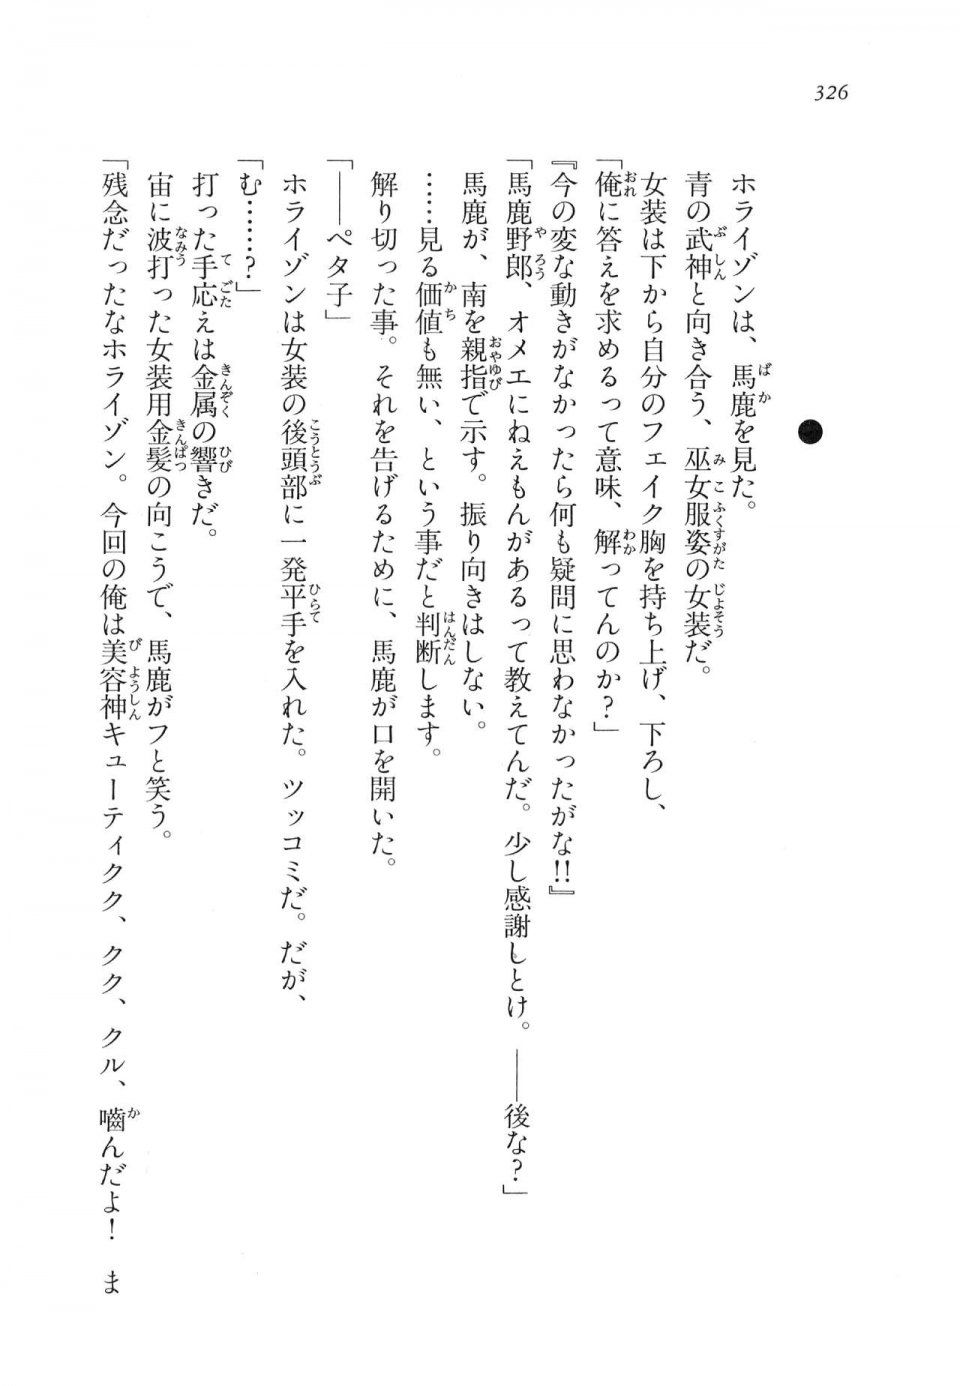 Kyoukai Senjou no Horizon LN Vol 11(5A) - Photo #326